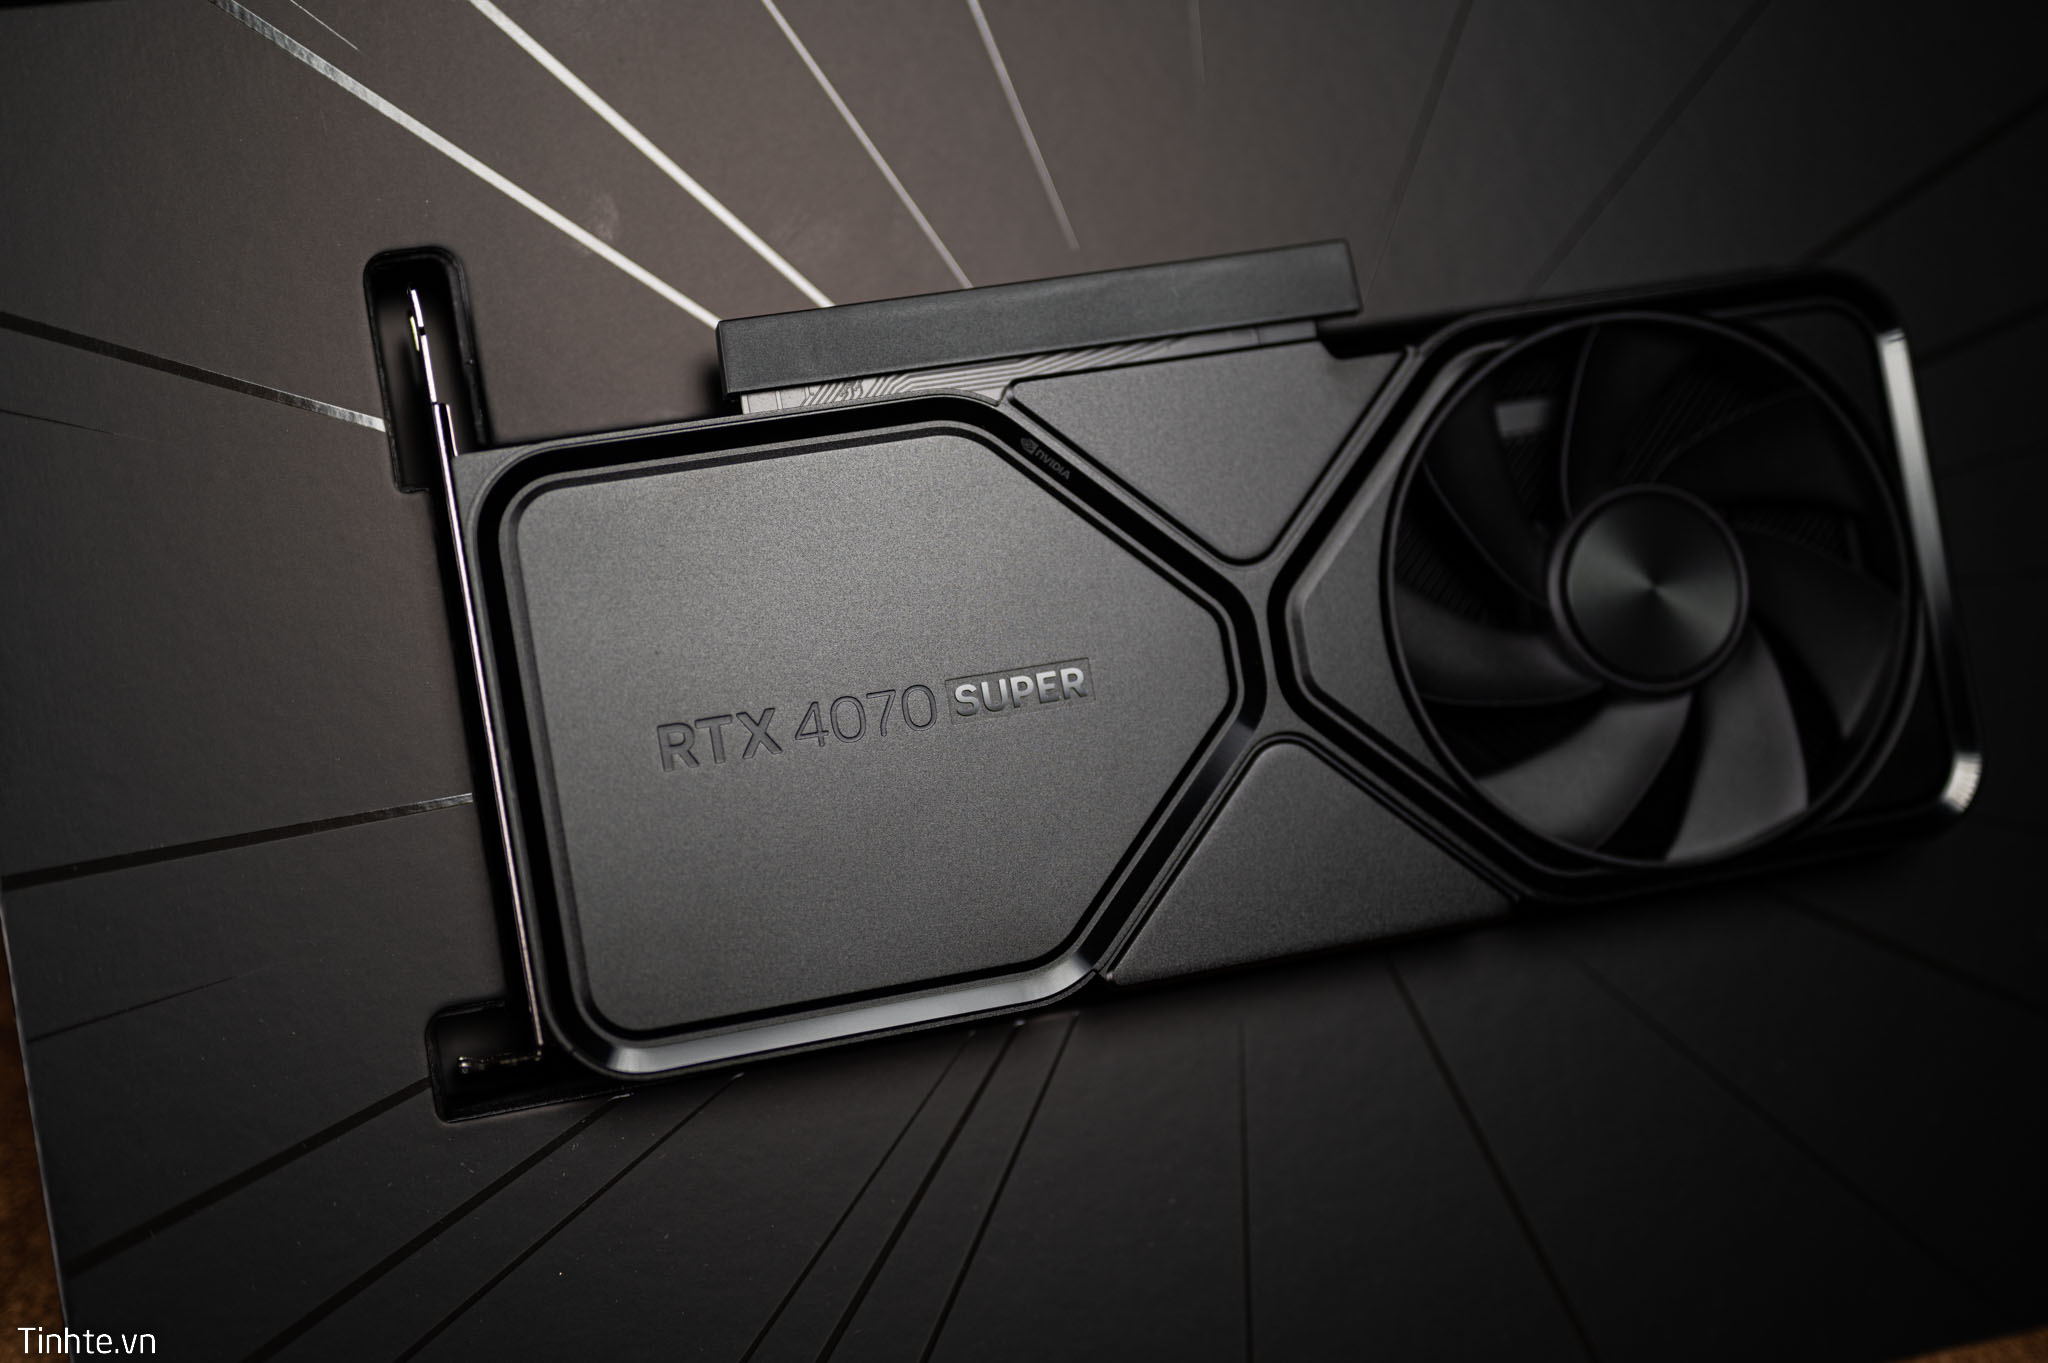 Nvidia GeForce RTX 4070 Super: Chơi game 4K giá chỉ 18 triệu Đồng, có khả thi không?